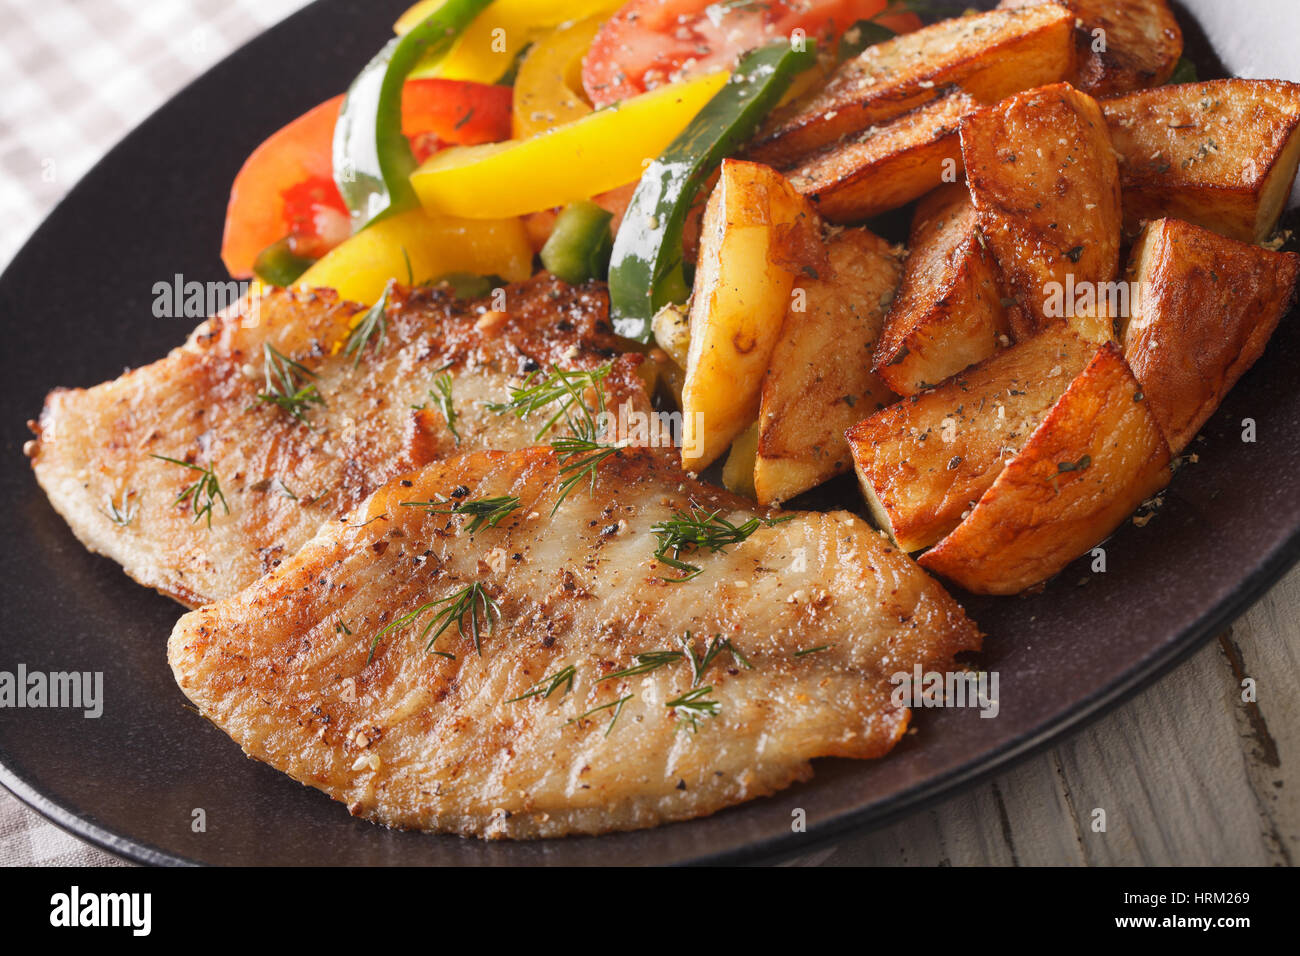 Filete de pescado blanco y rodajas de patata, ensalada fresca en una placa horizontal cerca. Foto de stock